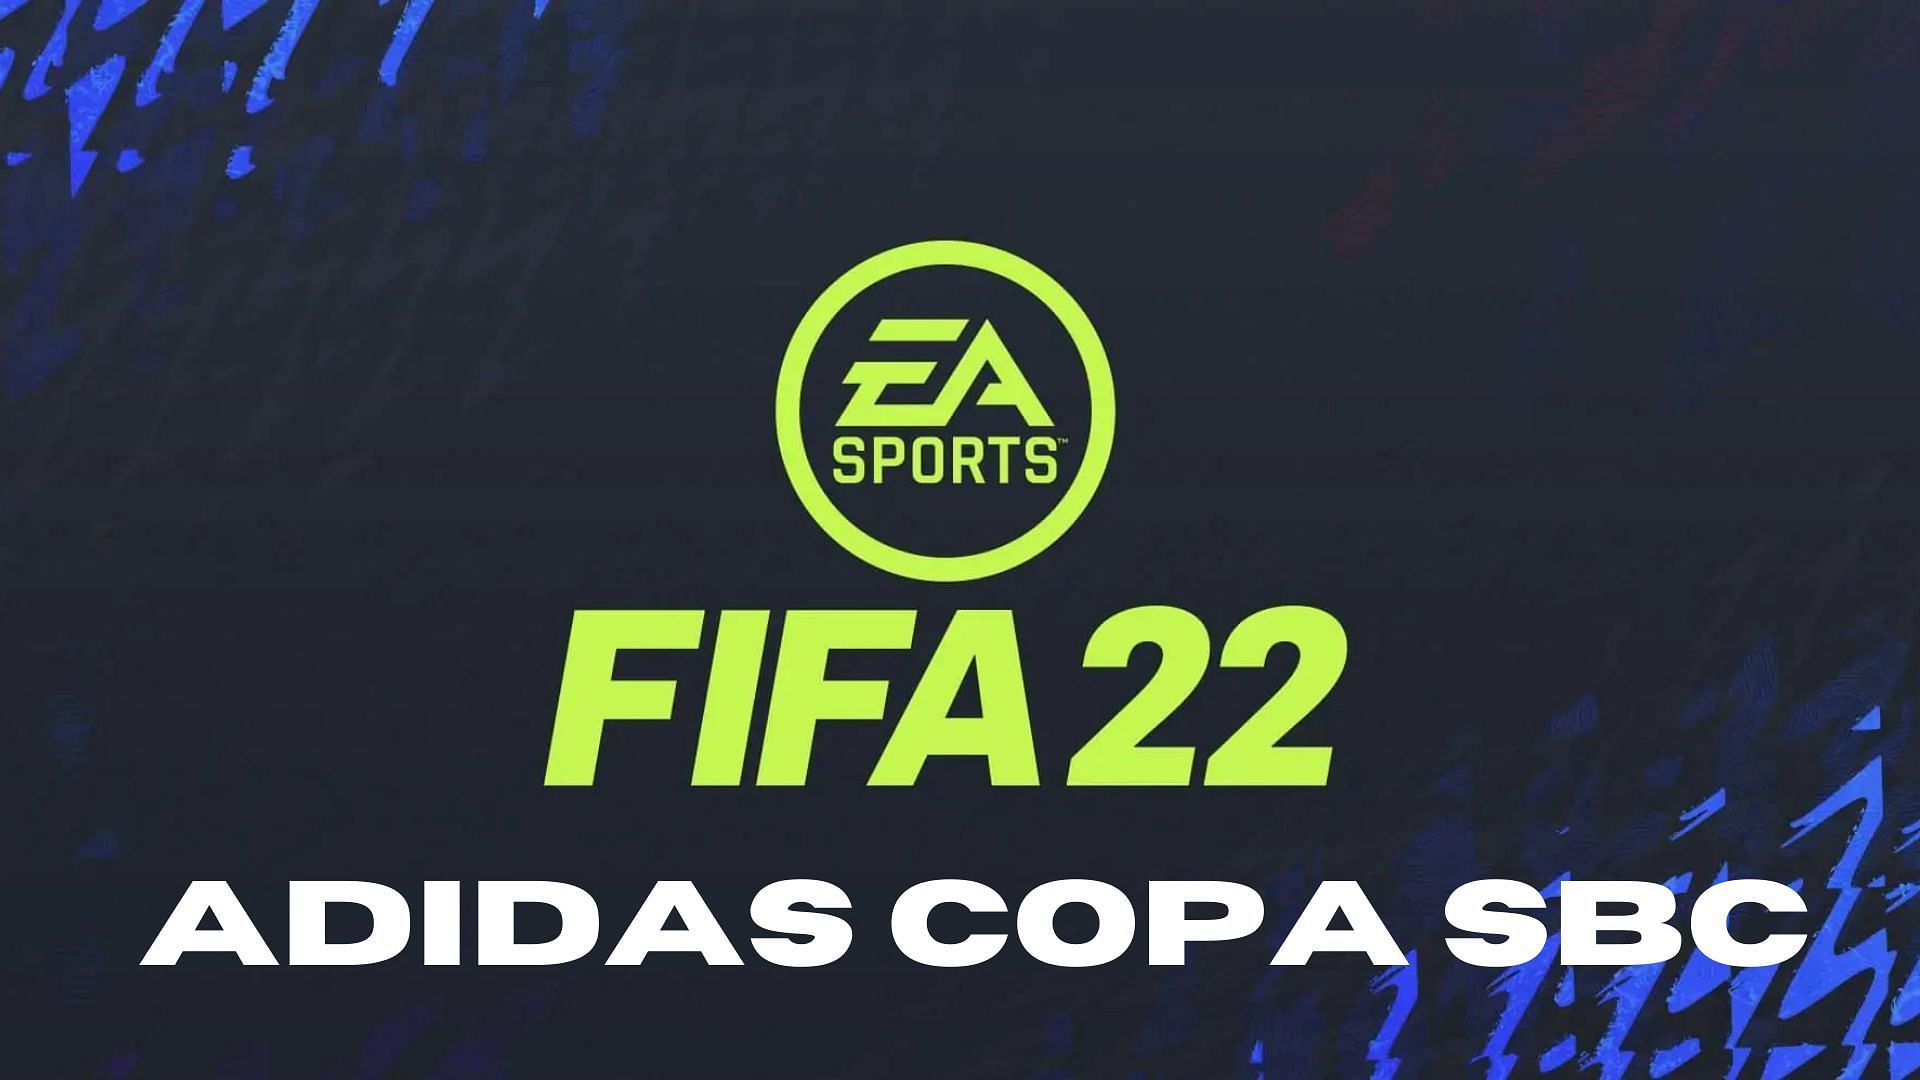 FIFA 22 Adidas Copa SBC has released (Image via Sportskeeda)